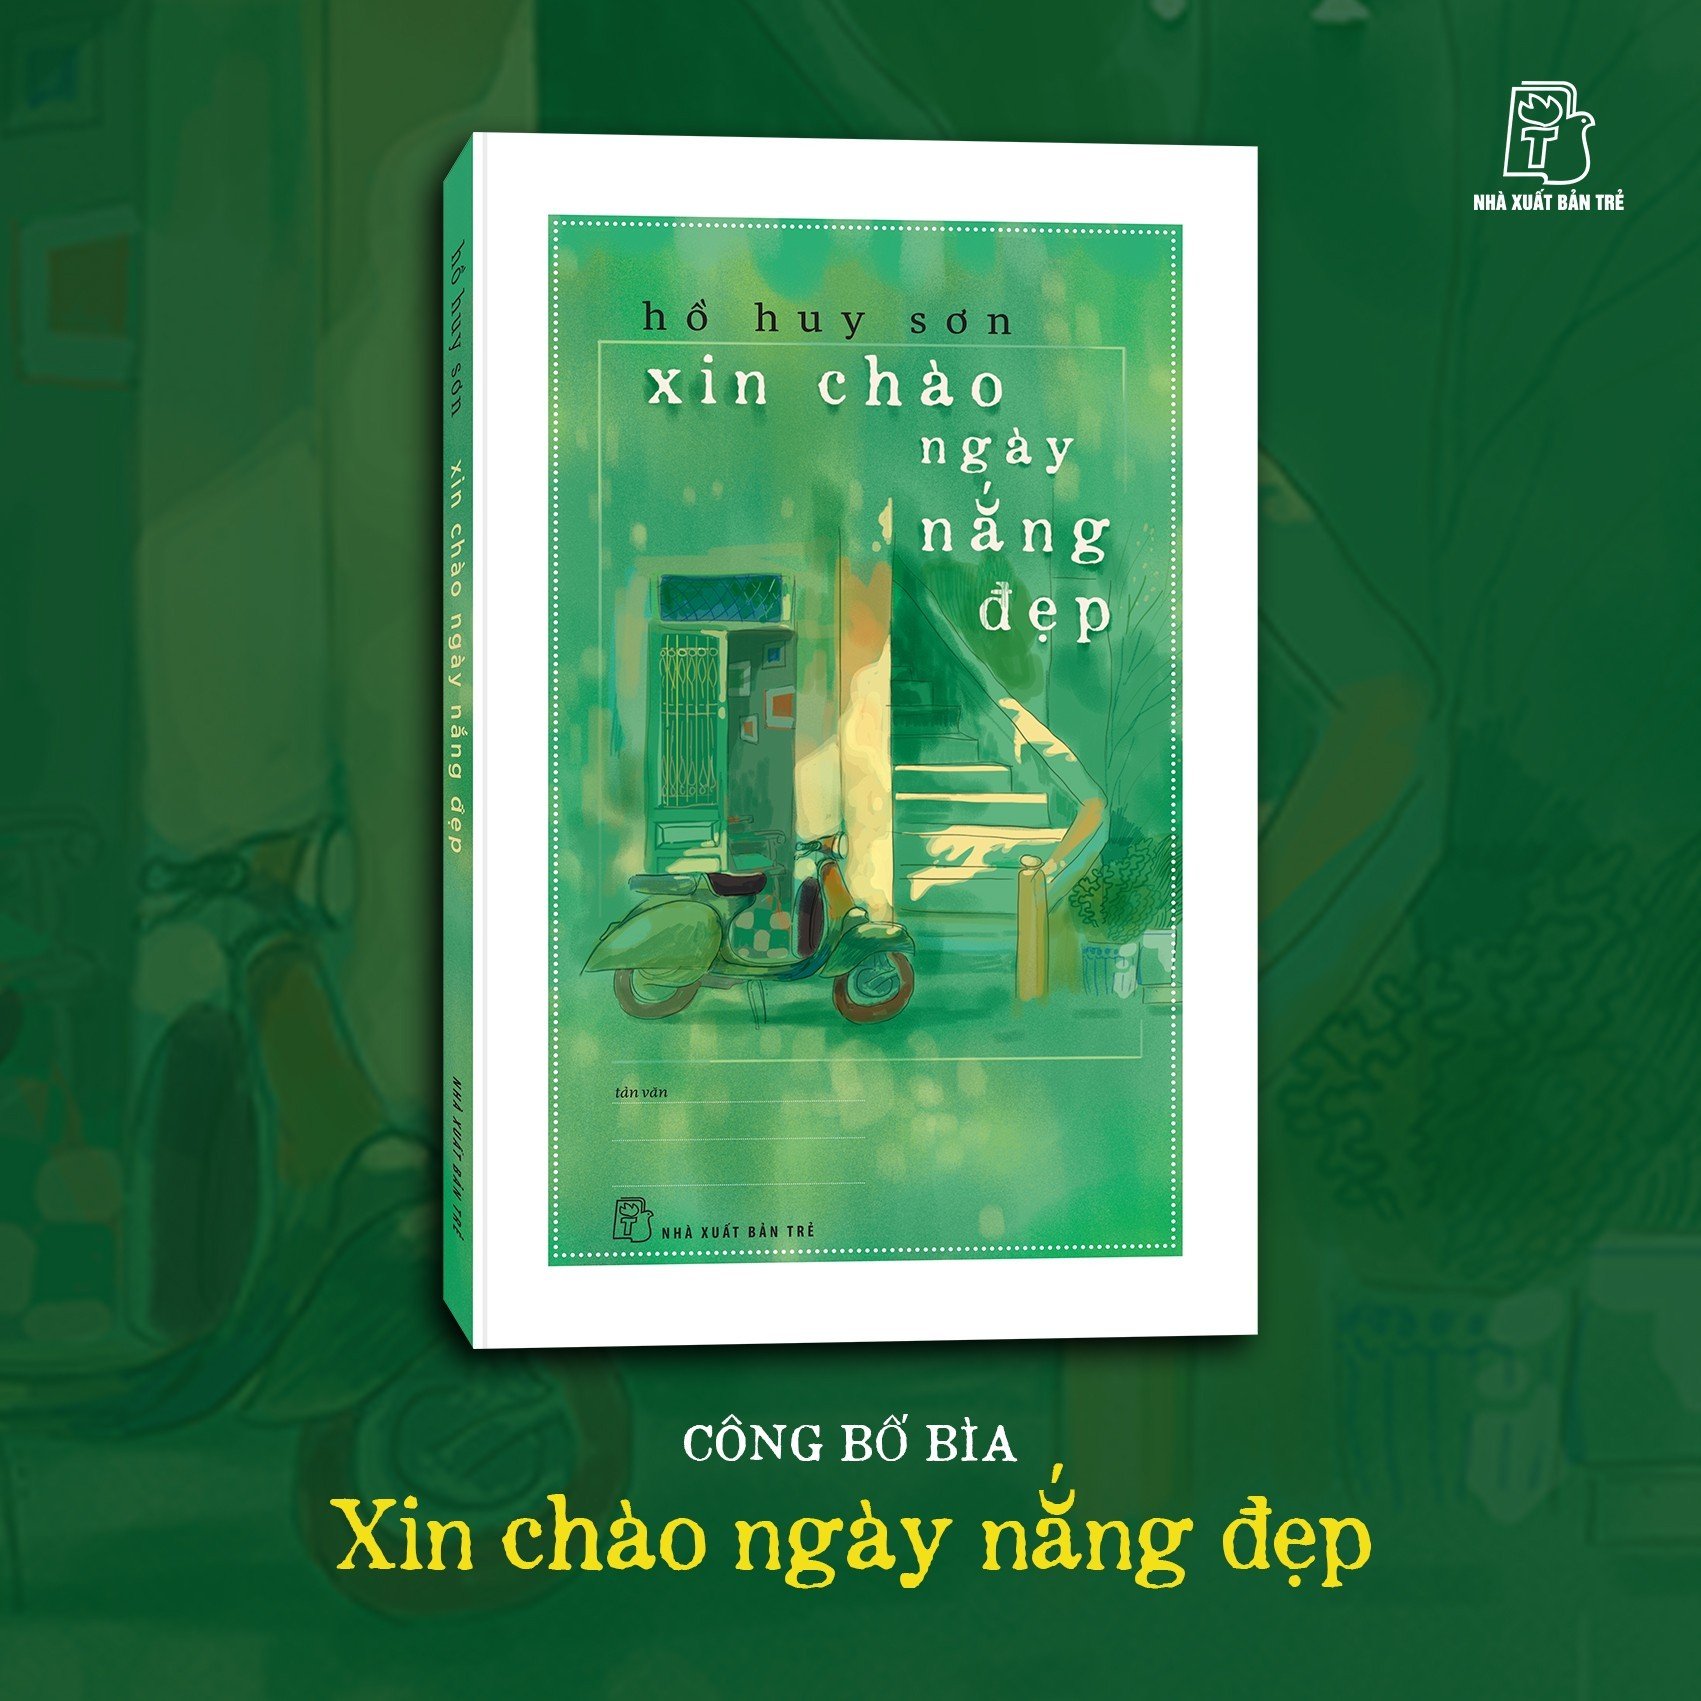 Nhà xuất bản Trẻ vừa công bố bìa tác phẩm Xin chào ngày nắng đẹp của nhà thơ - nhà báo Hồ Huy Sơn